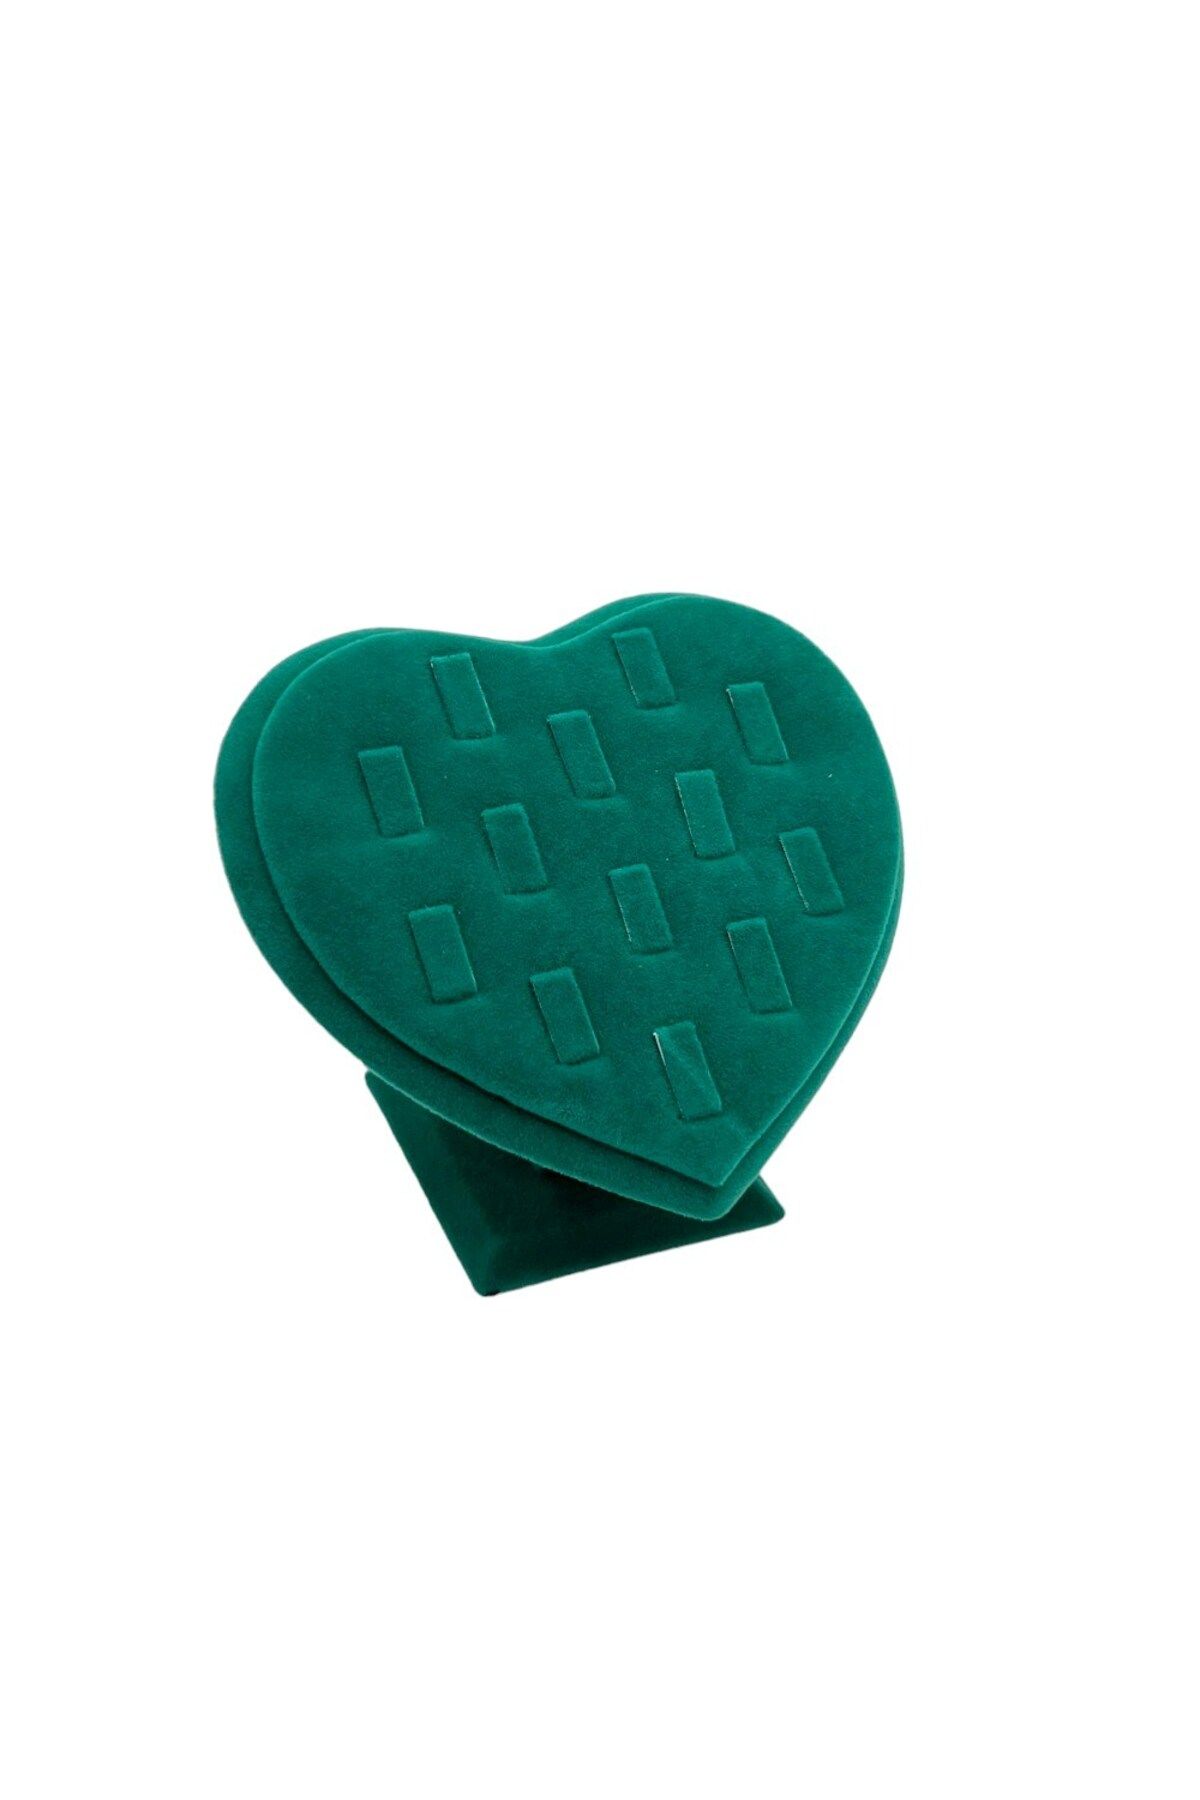 Zeyn Dekor Kalp Yüzük Standı Yeşil Renk